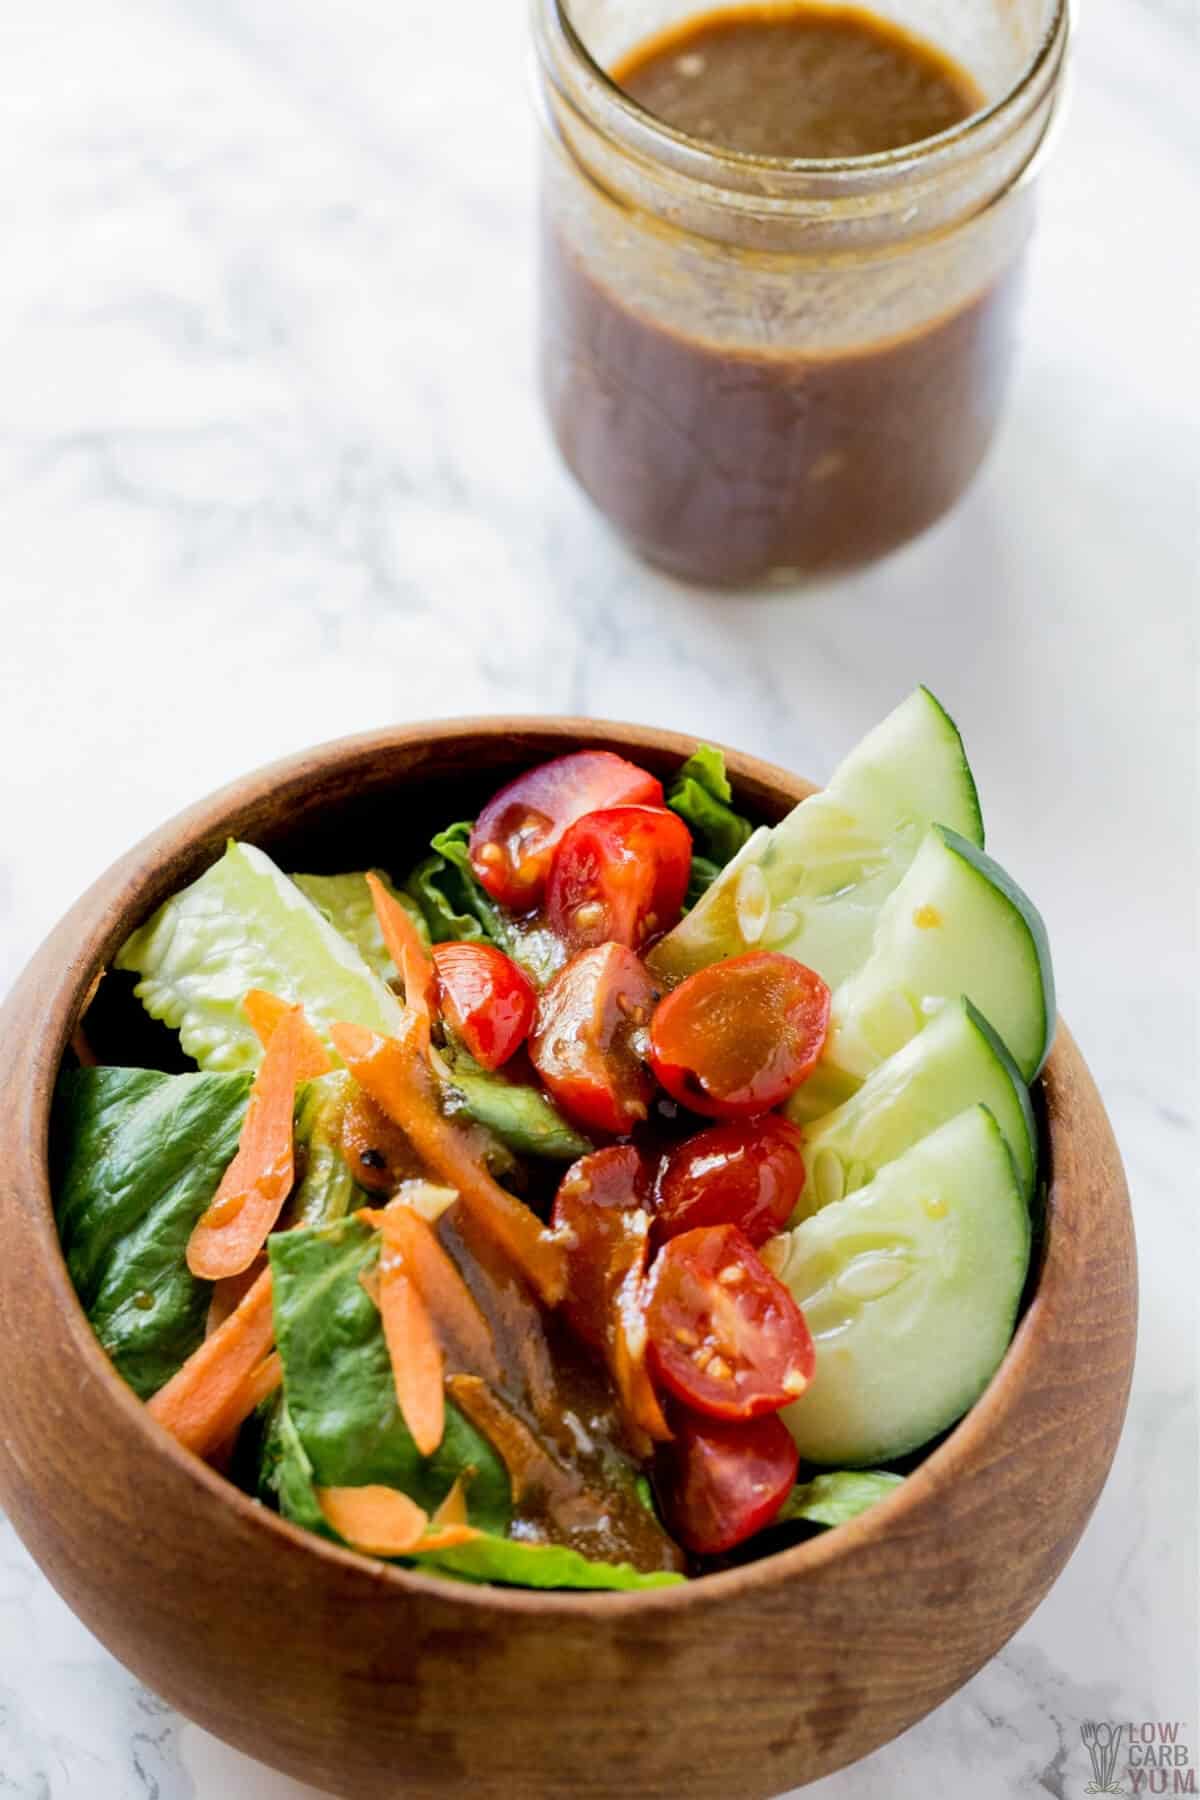 keto balsamic vinaigrette salad dressing over vegetables in wood bowl